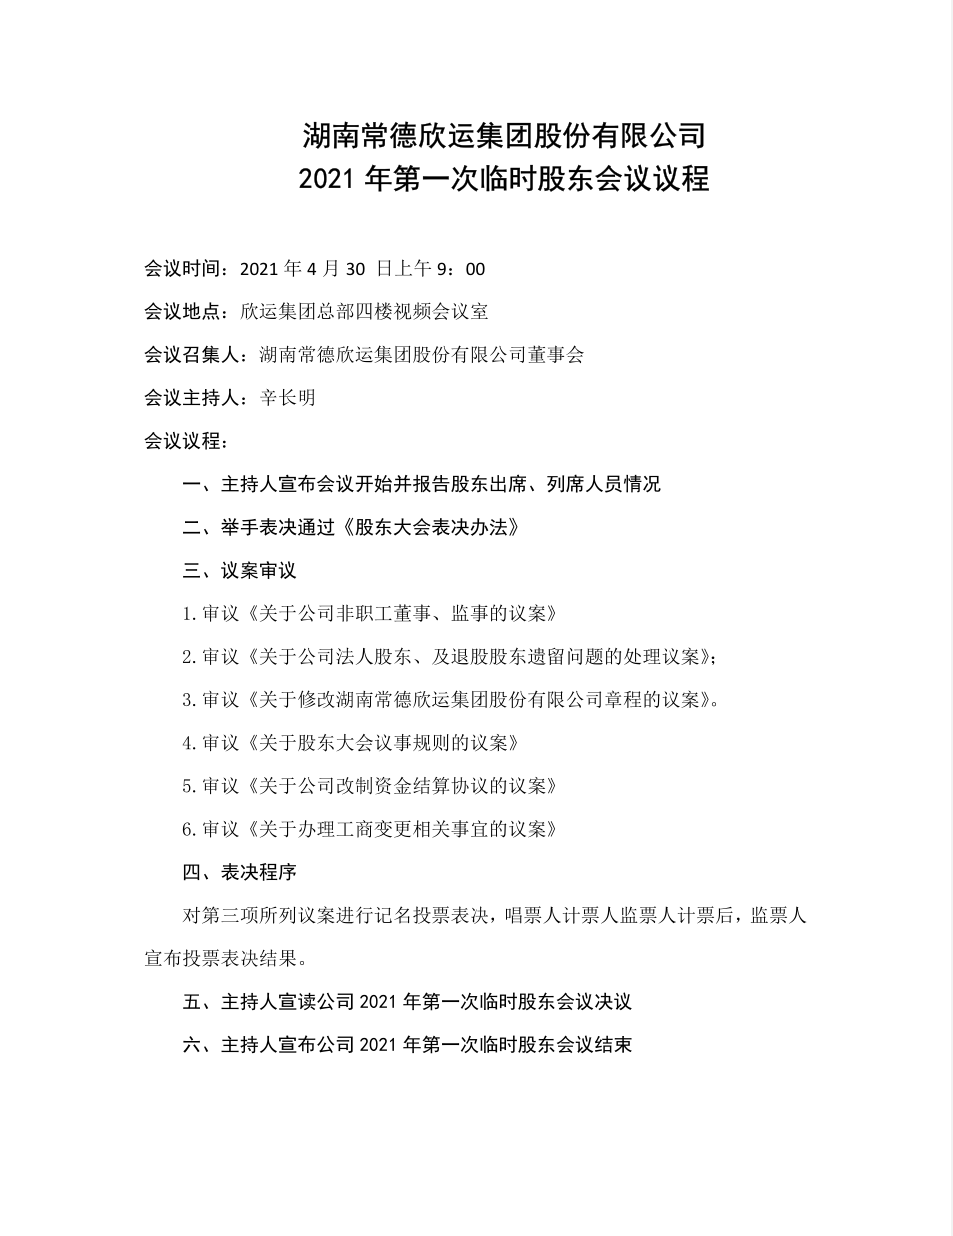 湖南常德欣运集团股份有限公司2021年第一次临时股东会议议程(图1)